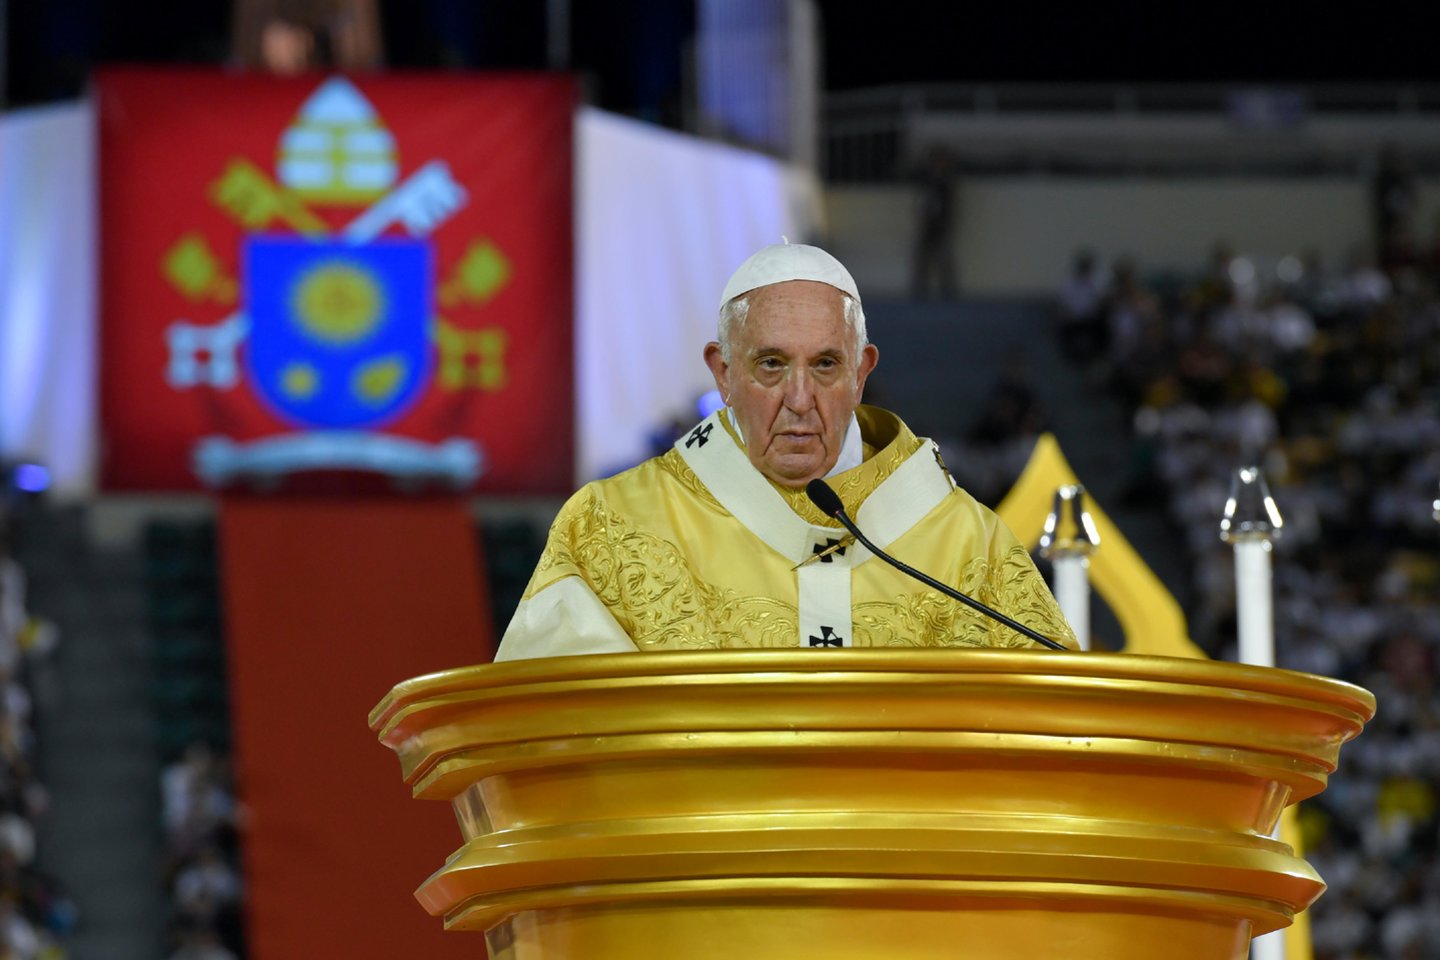  Popiežius Pranciškus ketvirtadienį per mišias sausakimšame Bankoko stadione paragino dešimtis tūkstančių jose dalyvaujančių atsidavusių maldininkų gerbti prostitutes ir prekybos žmonėmis aukas.<br>Reuters/Scanpix nuotr.